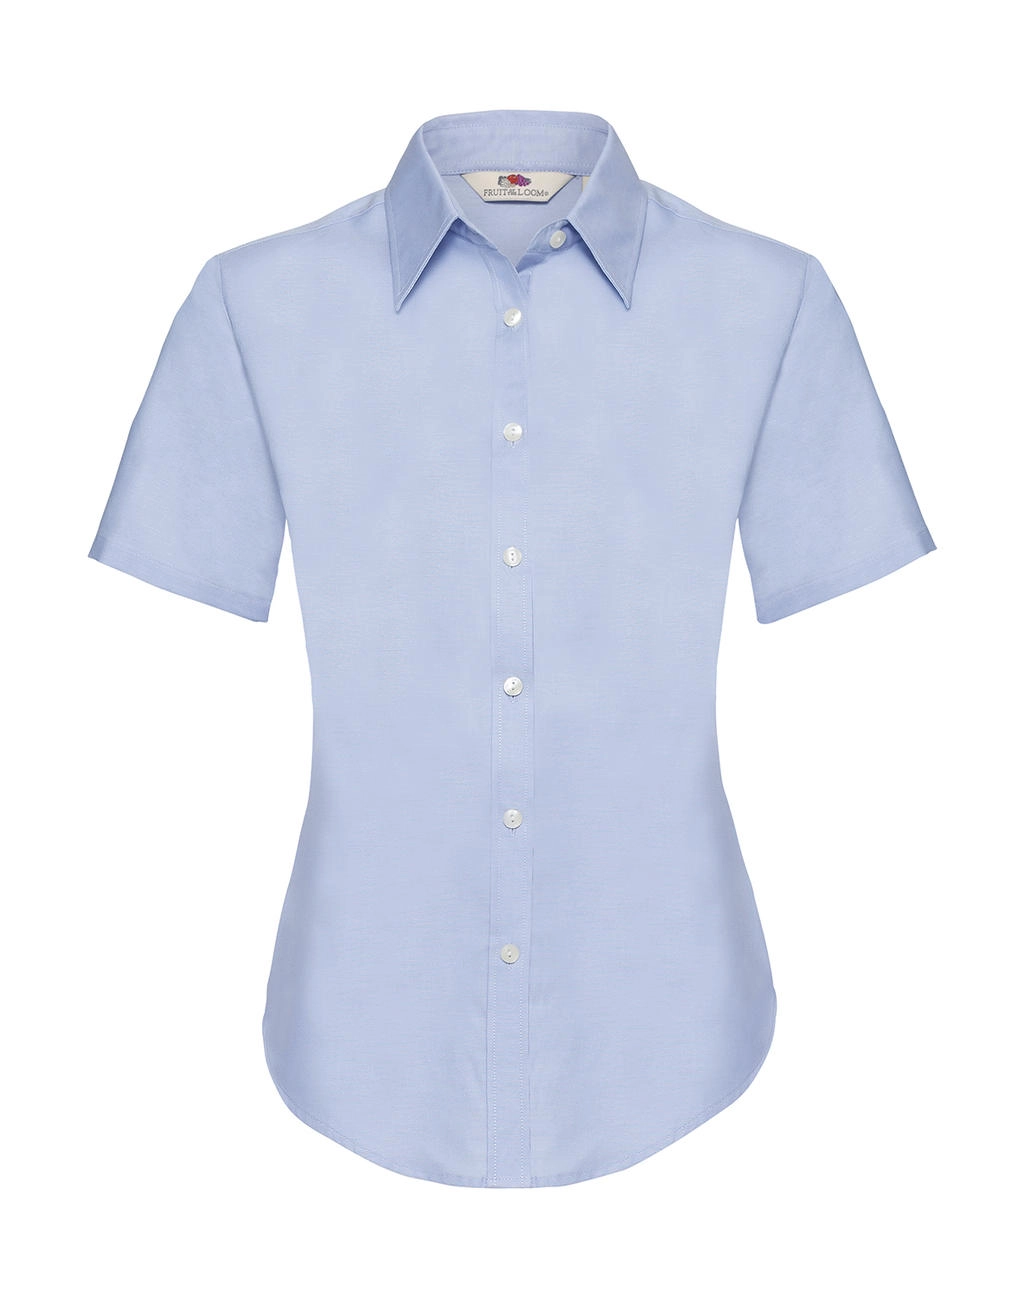 Ladies Oxford Shirt zum Besticken und Bedrucken in der Farbe Oxford Blue mit Ihren Logo, Schriftzug oder Motiv.